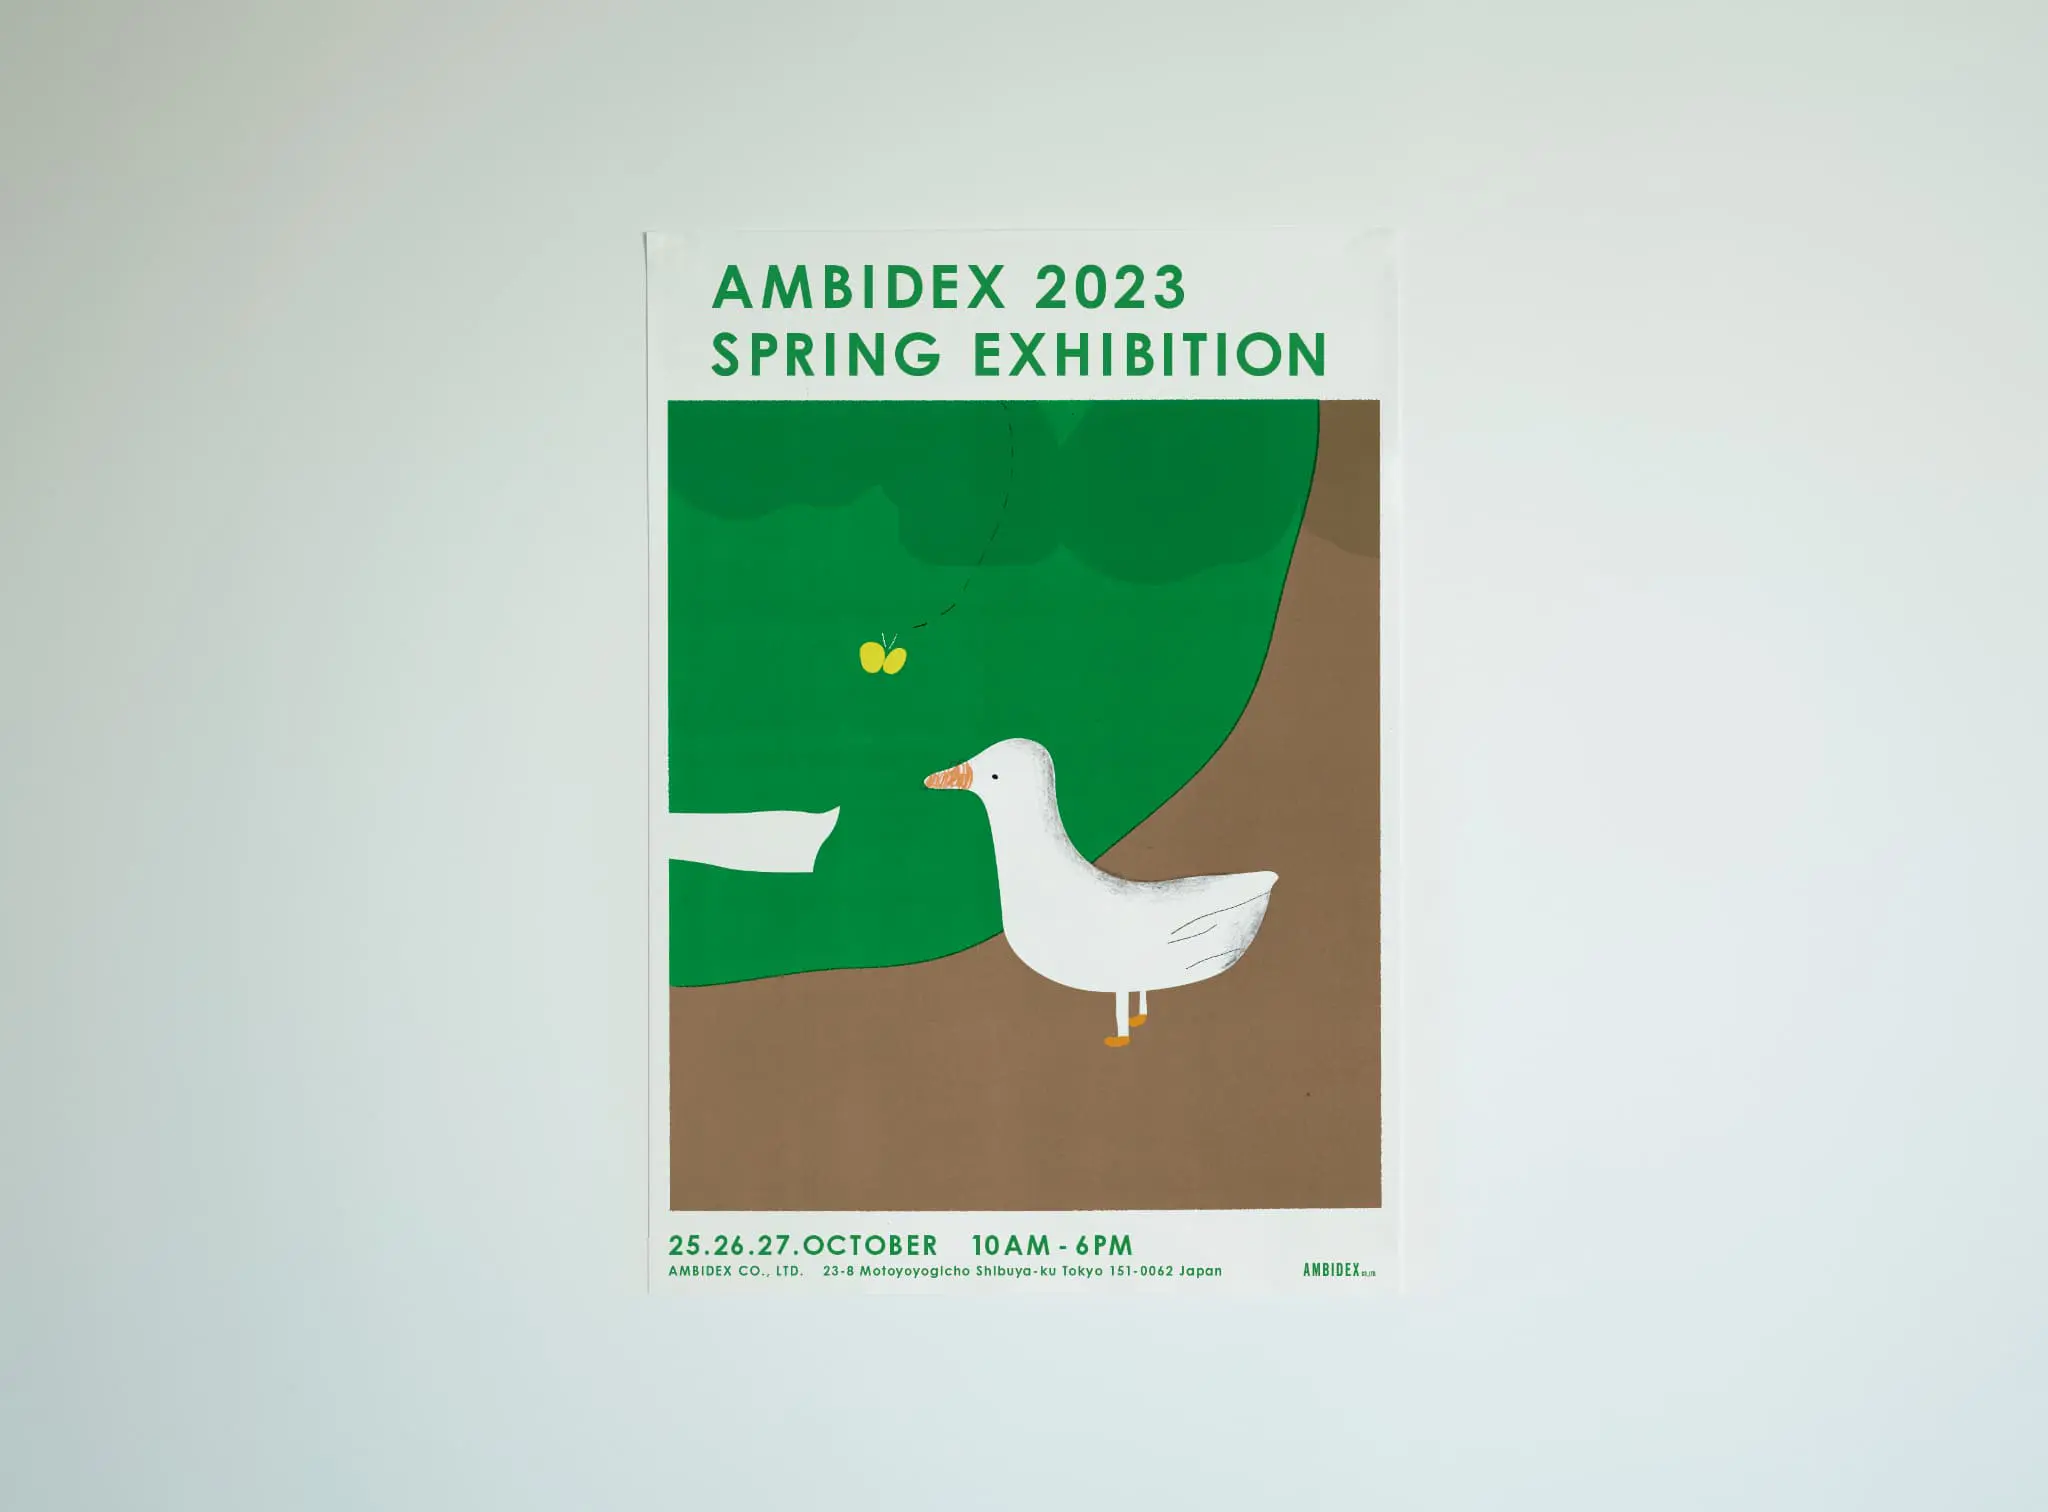 AMBIDEX 2023 SPRING EXHIBITION